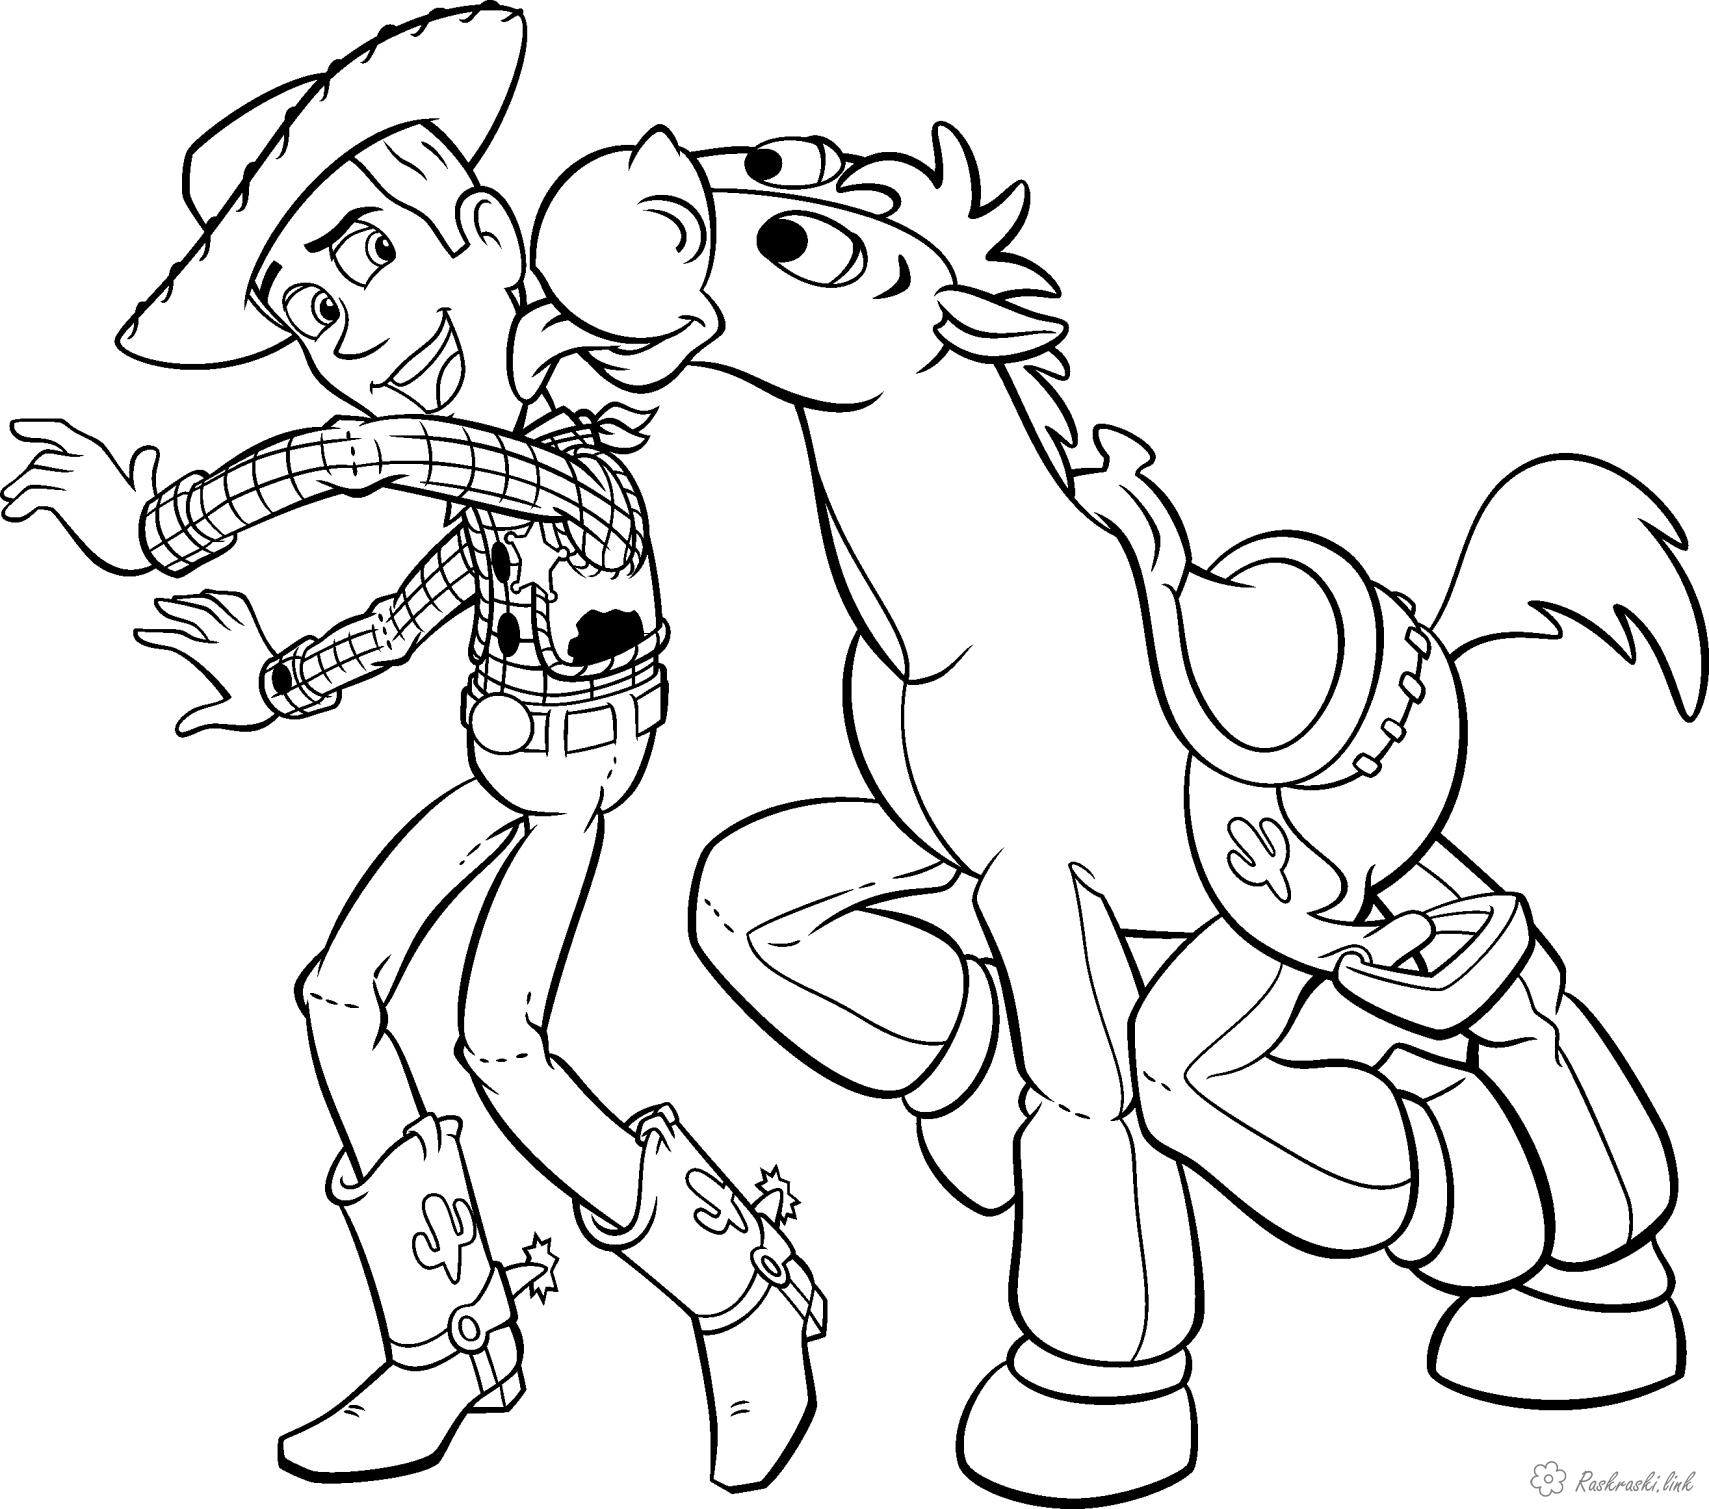 Розмальовки Історія іграшок Історія іграшок, ковбой, Вуді, кінь, Булзай